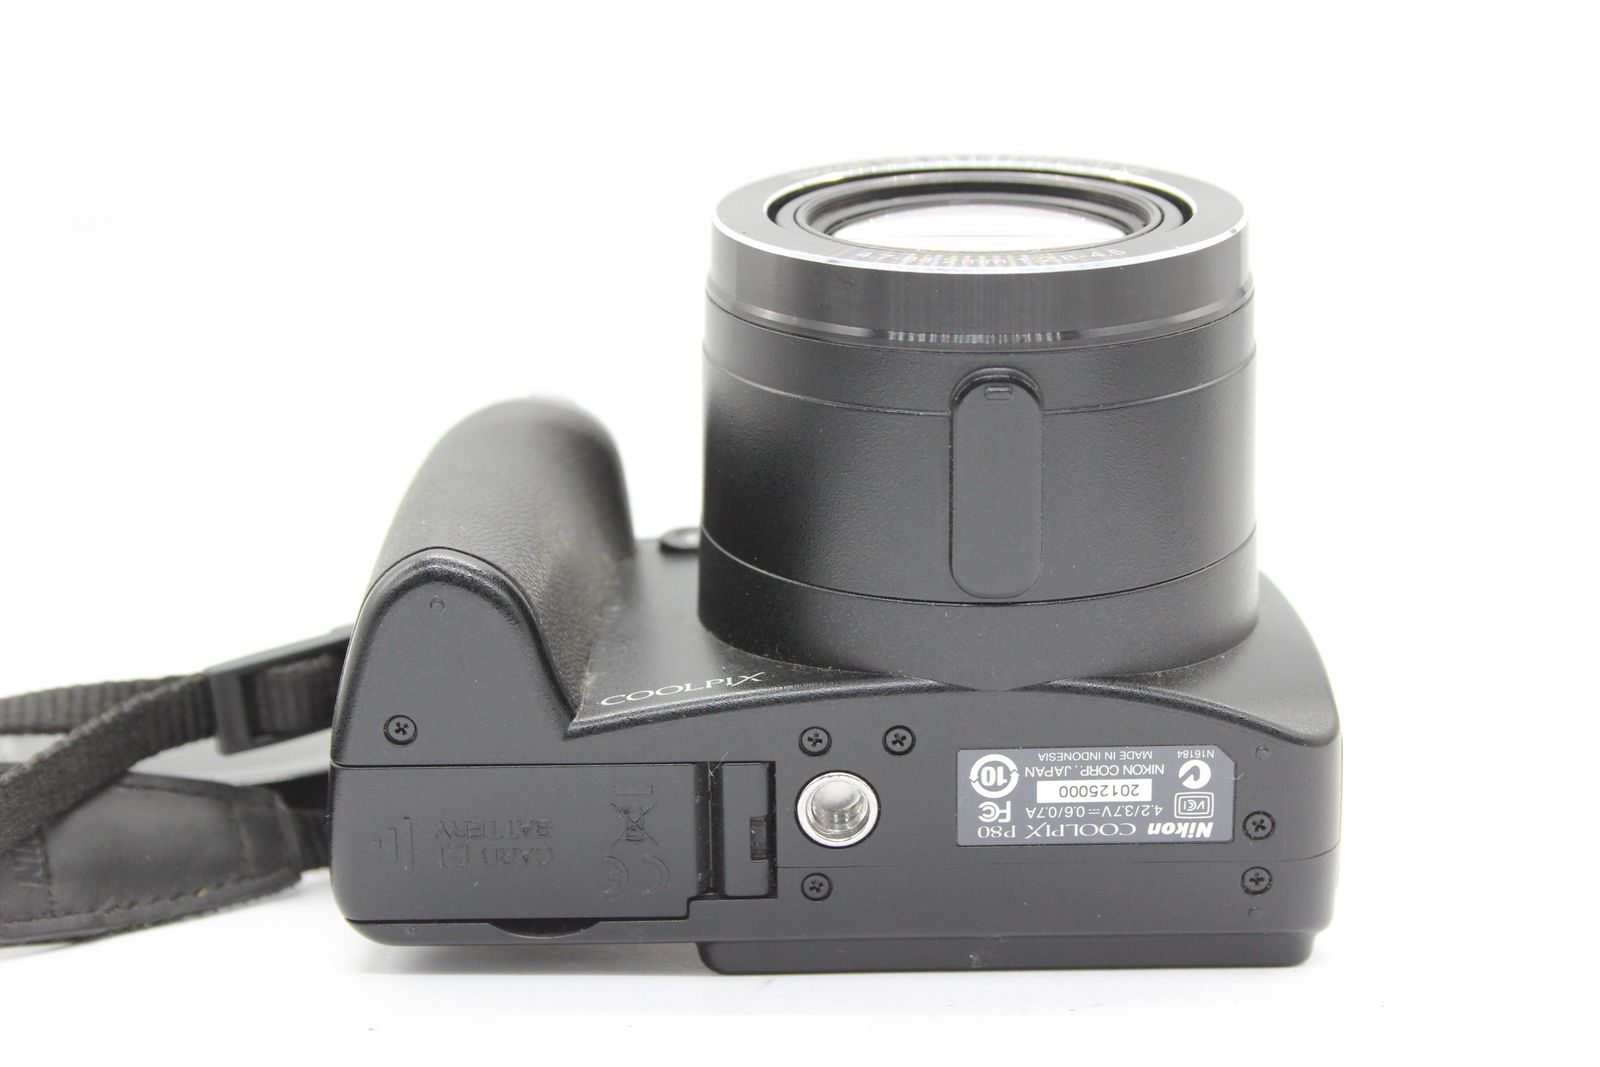 返品保証】 ニコン Nikon Coolpix P80 Nikkor 18x コンパクトデジタル